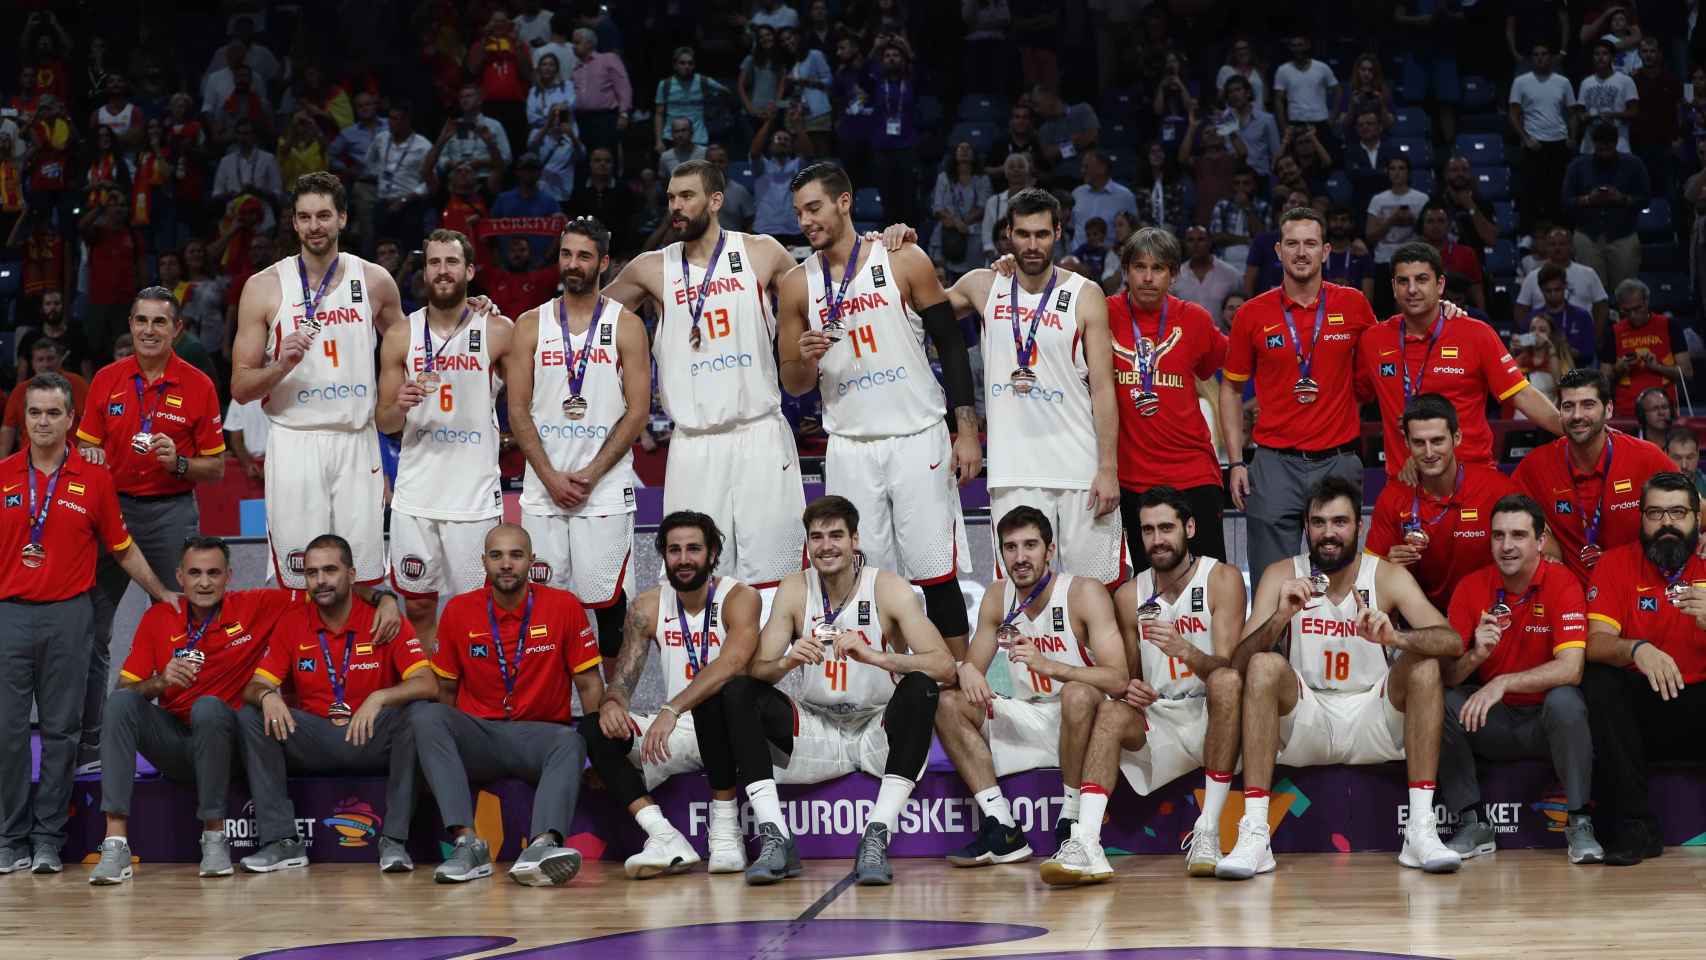 Foto de familia de la selección española, bronce en el Eurobasket 2017